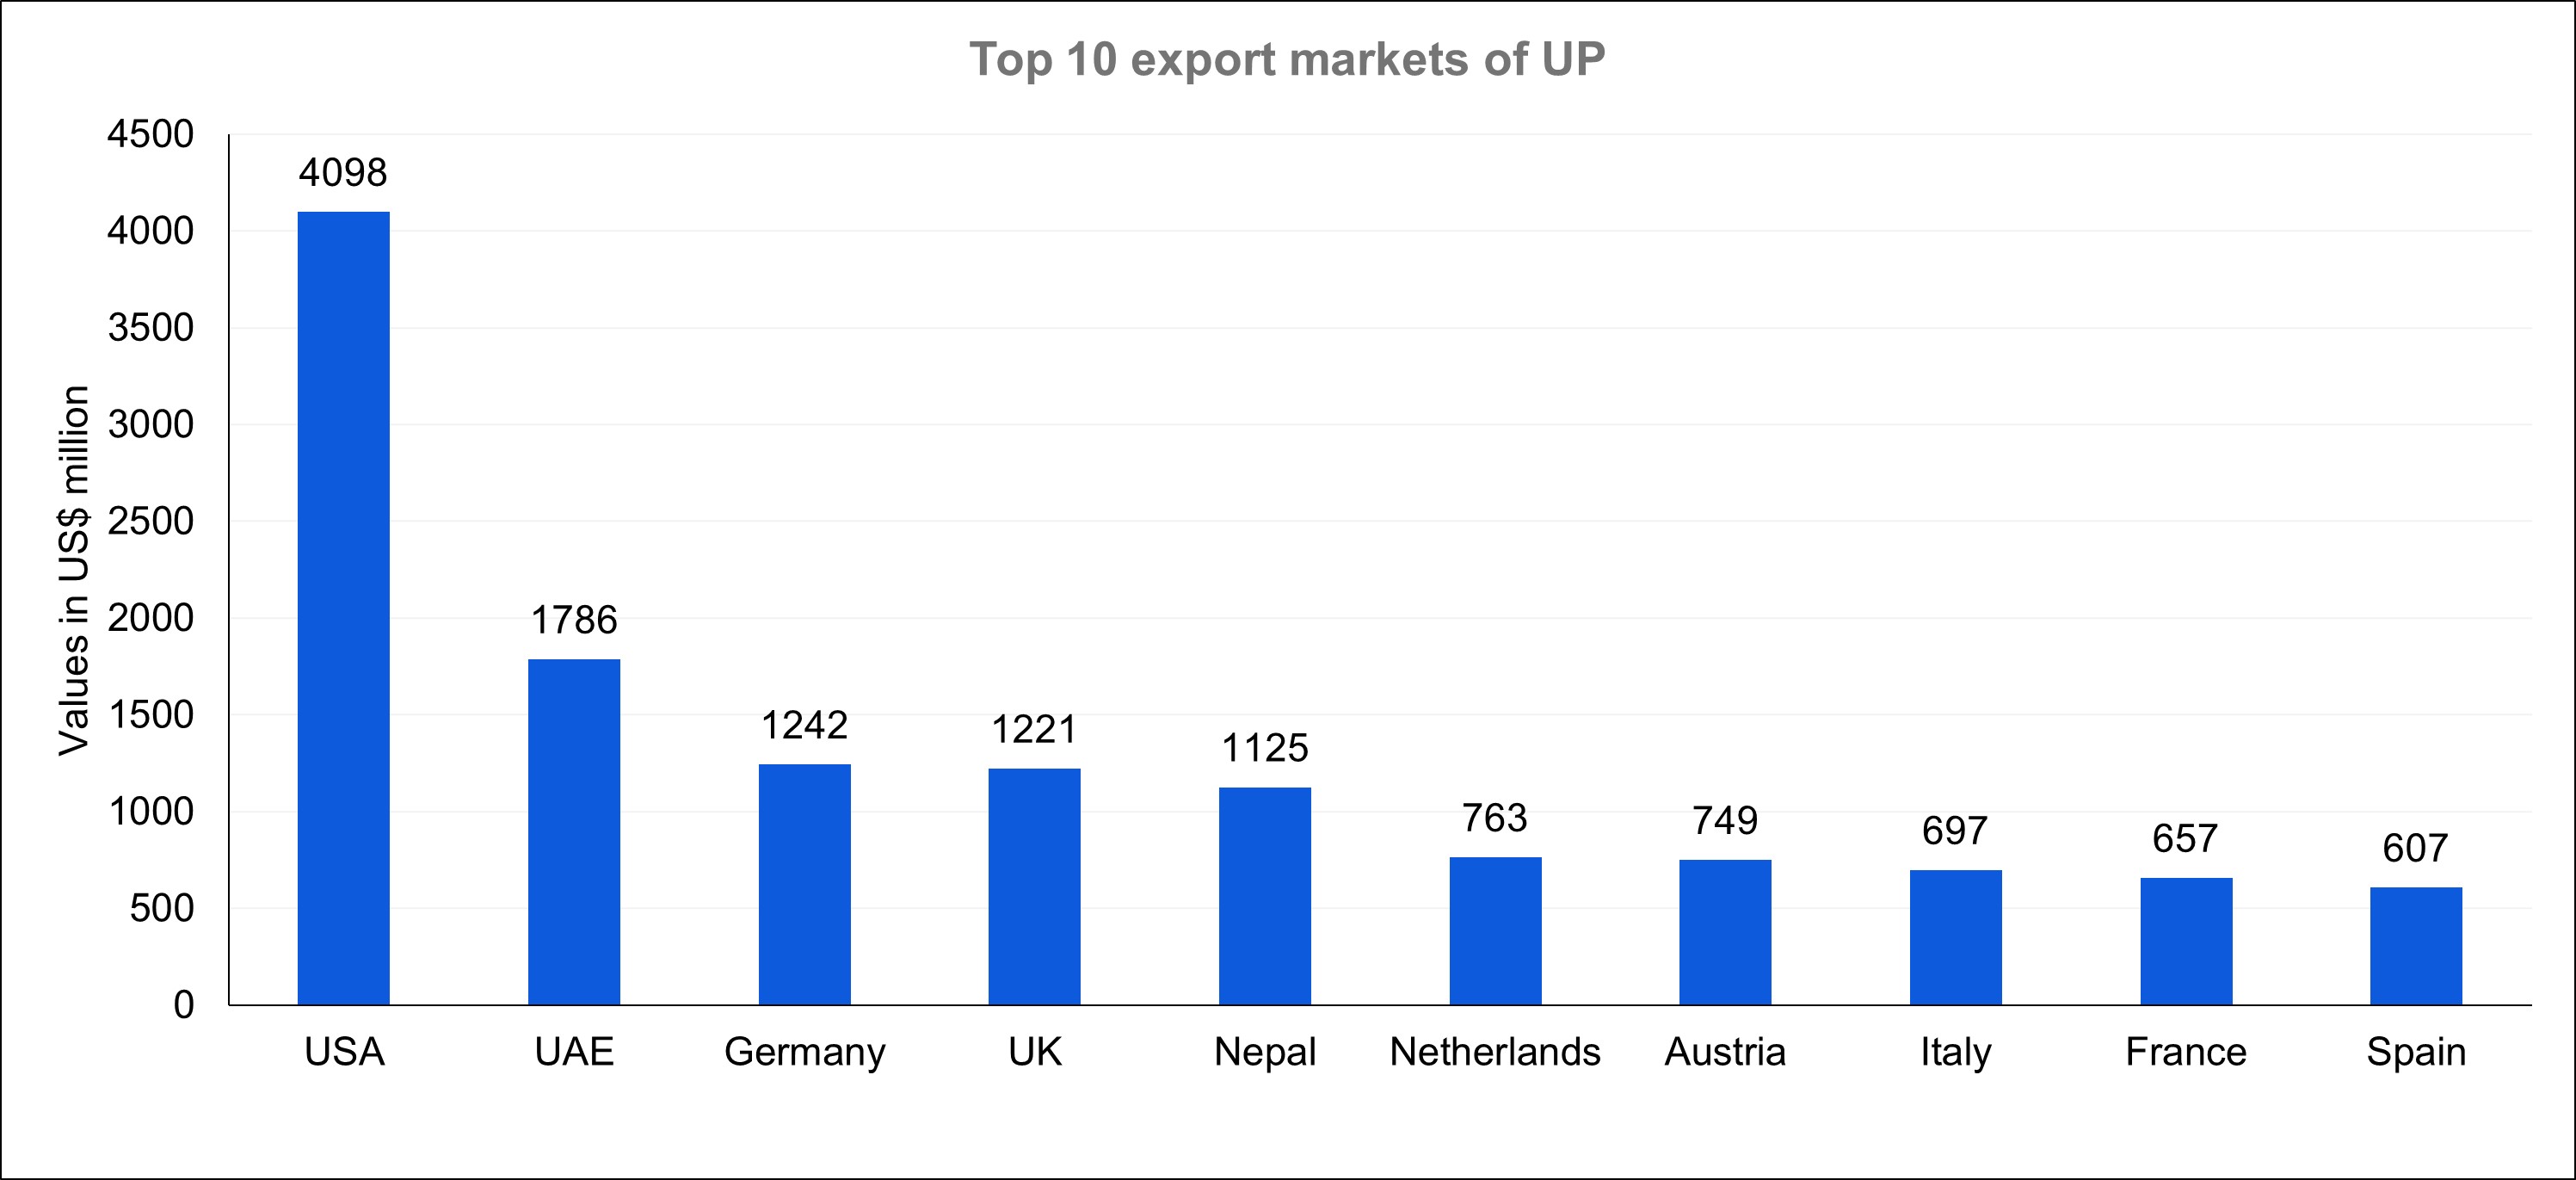 UP's top export markets